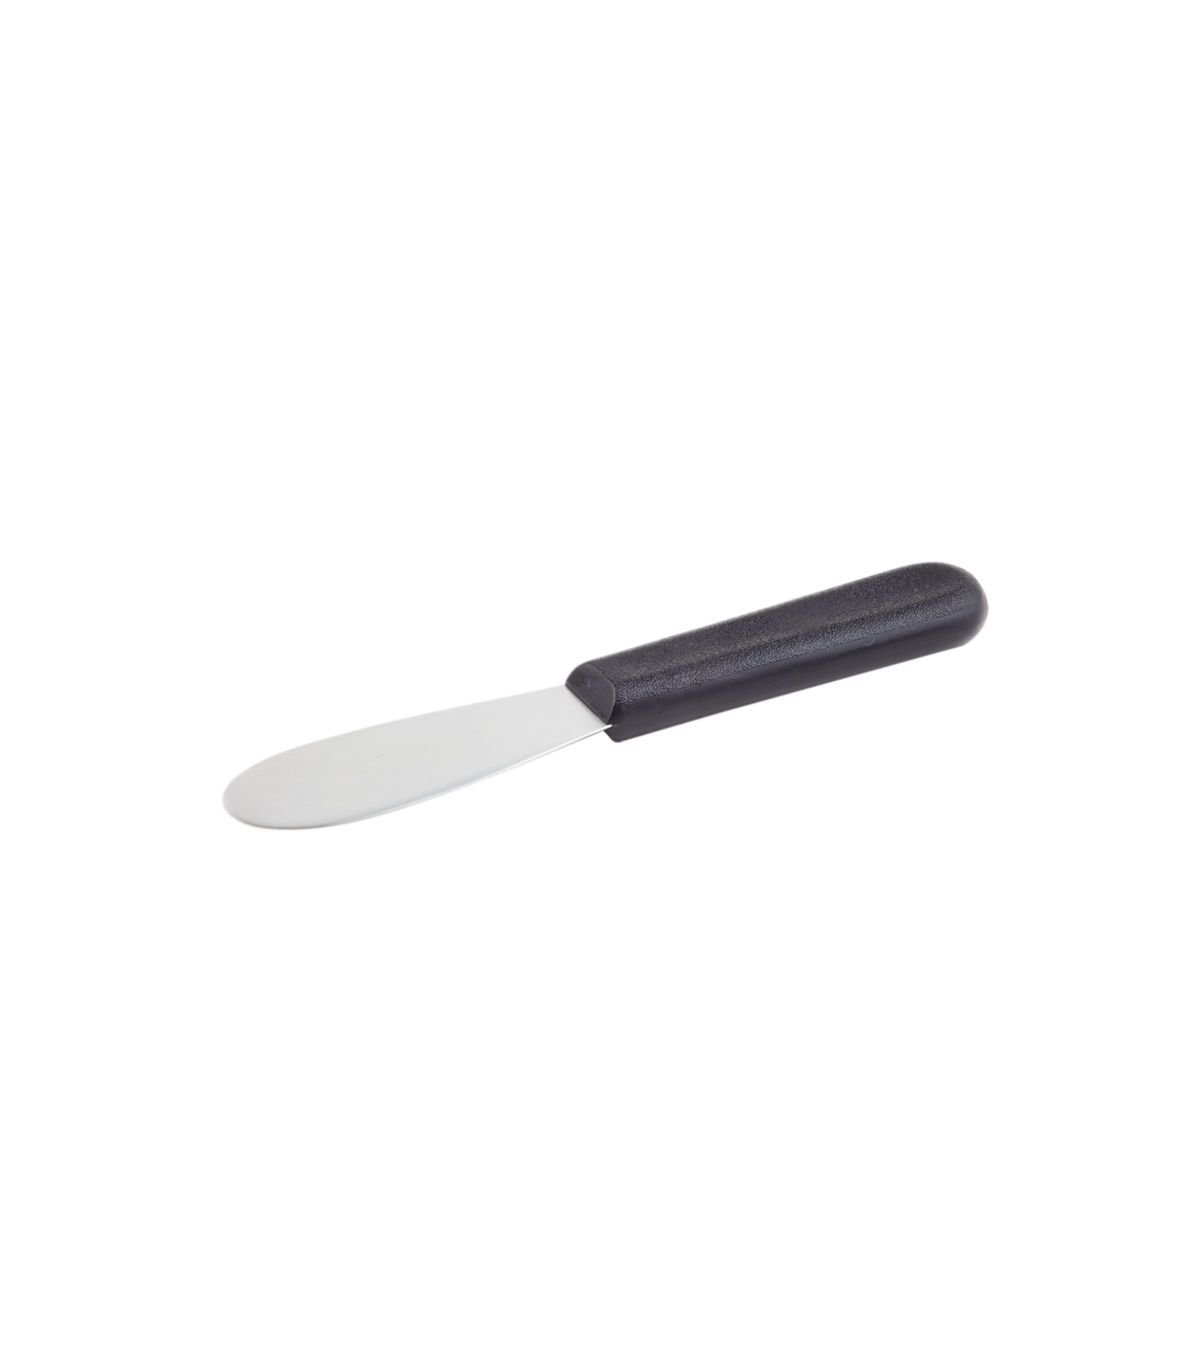 Spreader knife for sandwiches : Stellinox